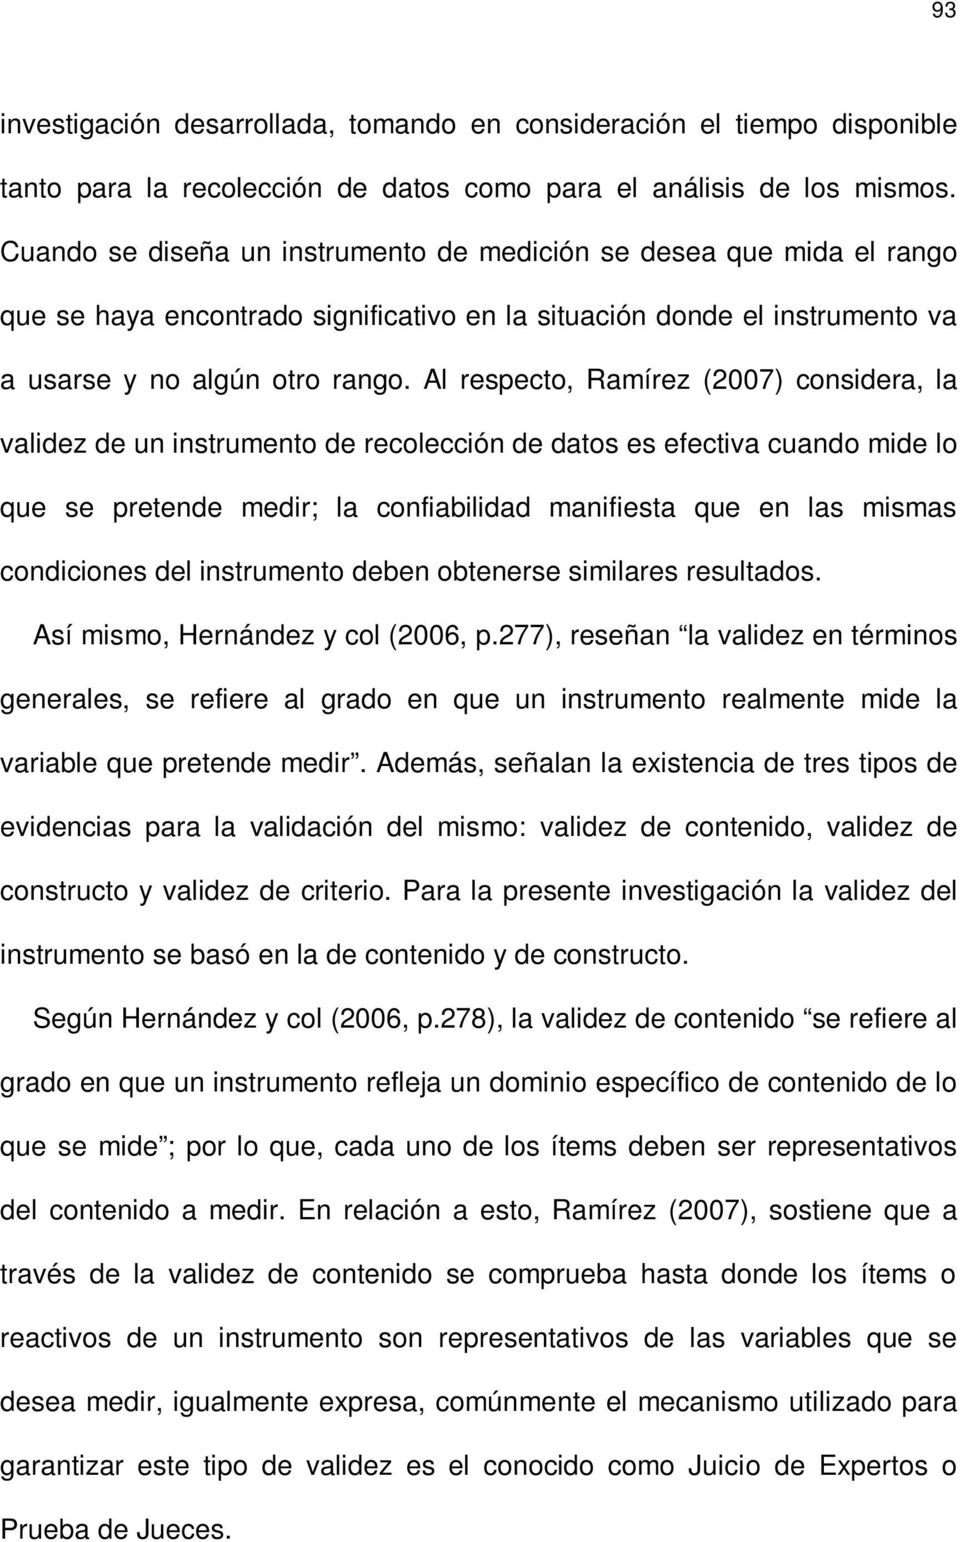 Al respecto, Ramírez (2007) considera, la validez de un instrumento de recolección de datos es efectiva cuando mide lo que se pretende medir; la confiabilidad manifiesta que en las mismas condiciones